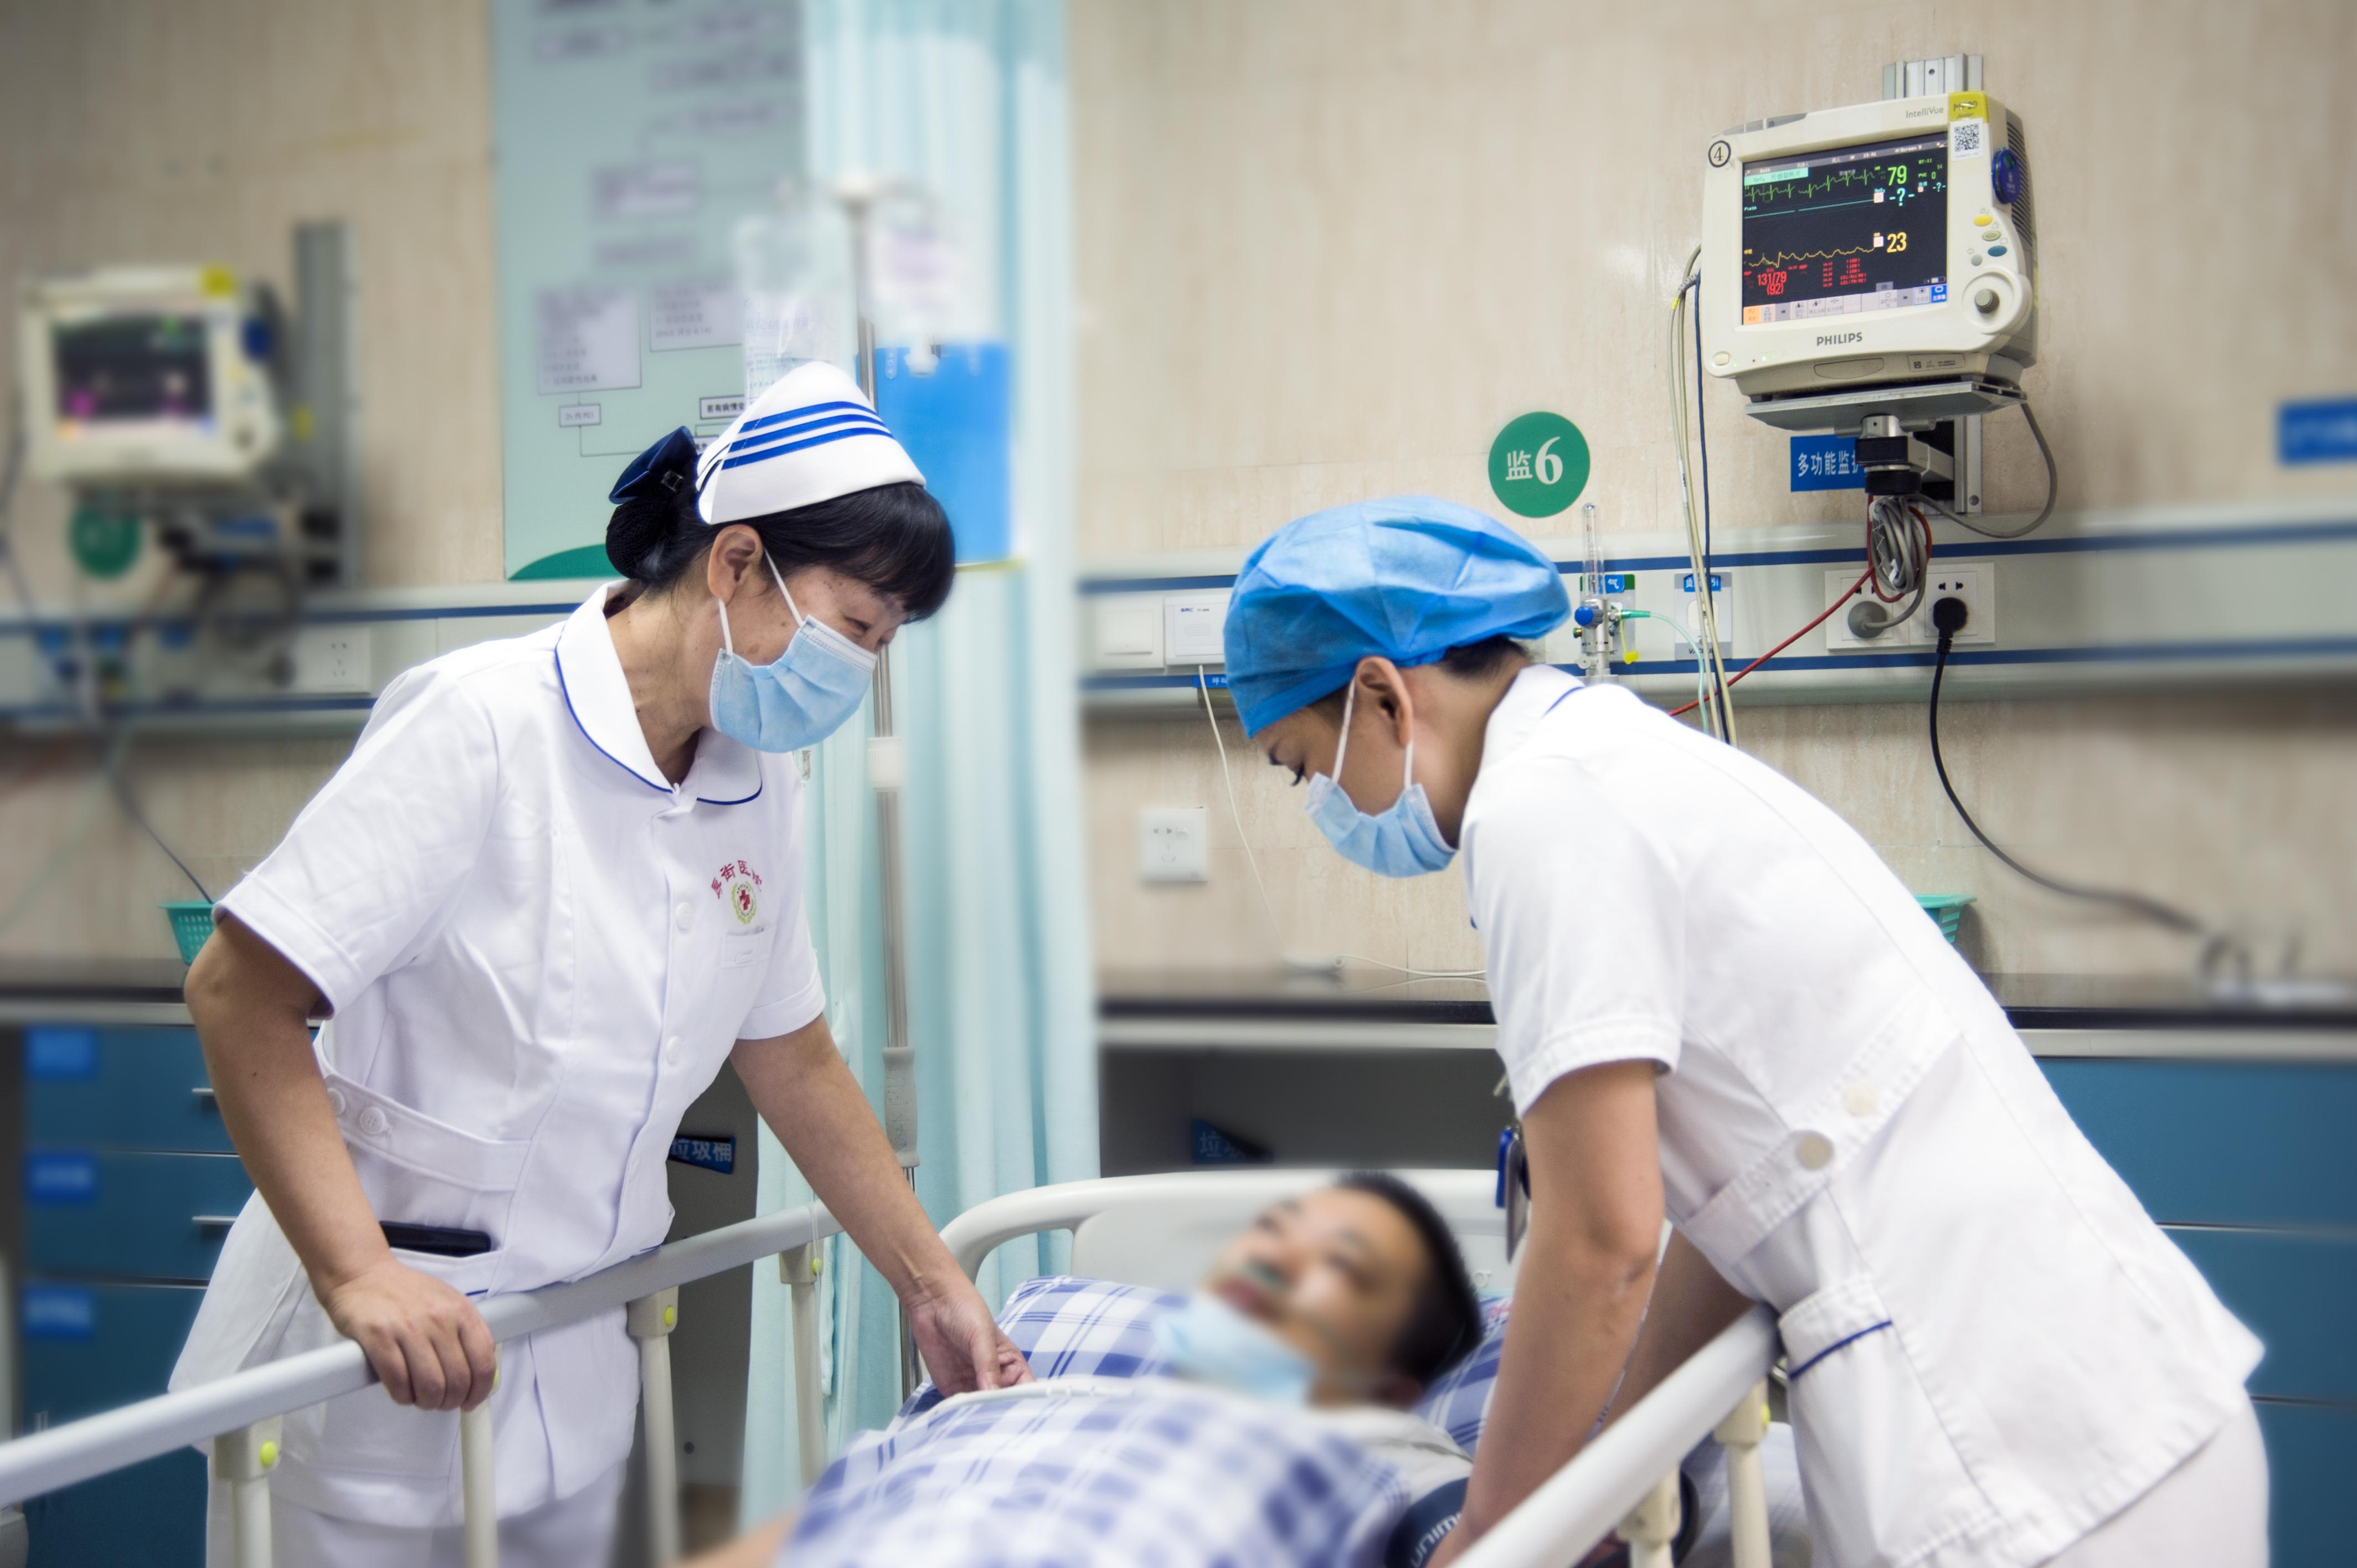 东莞市注册护士共 27954人,35岁以下青年护士占七成